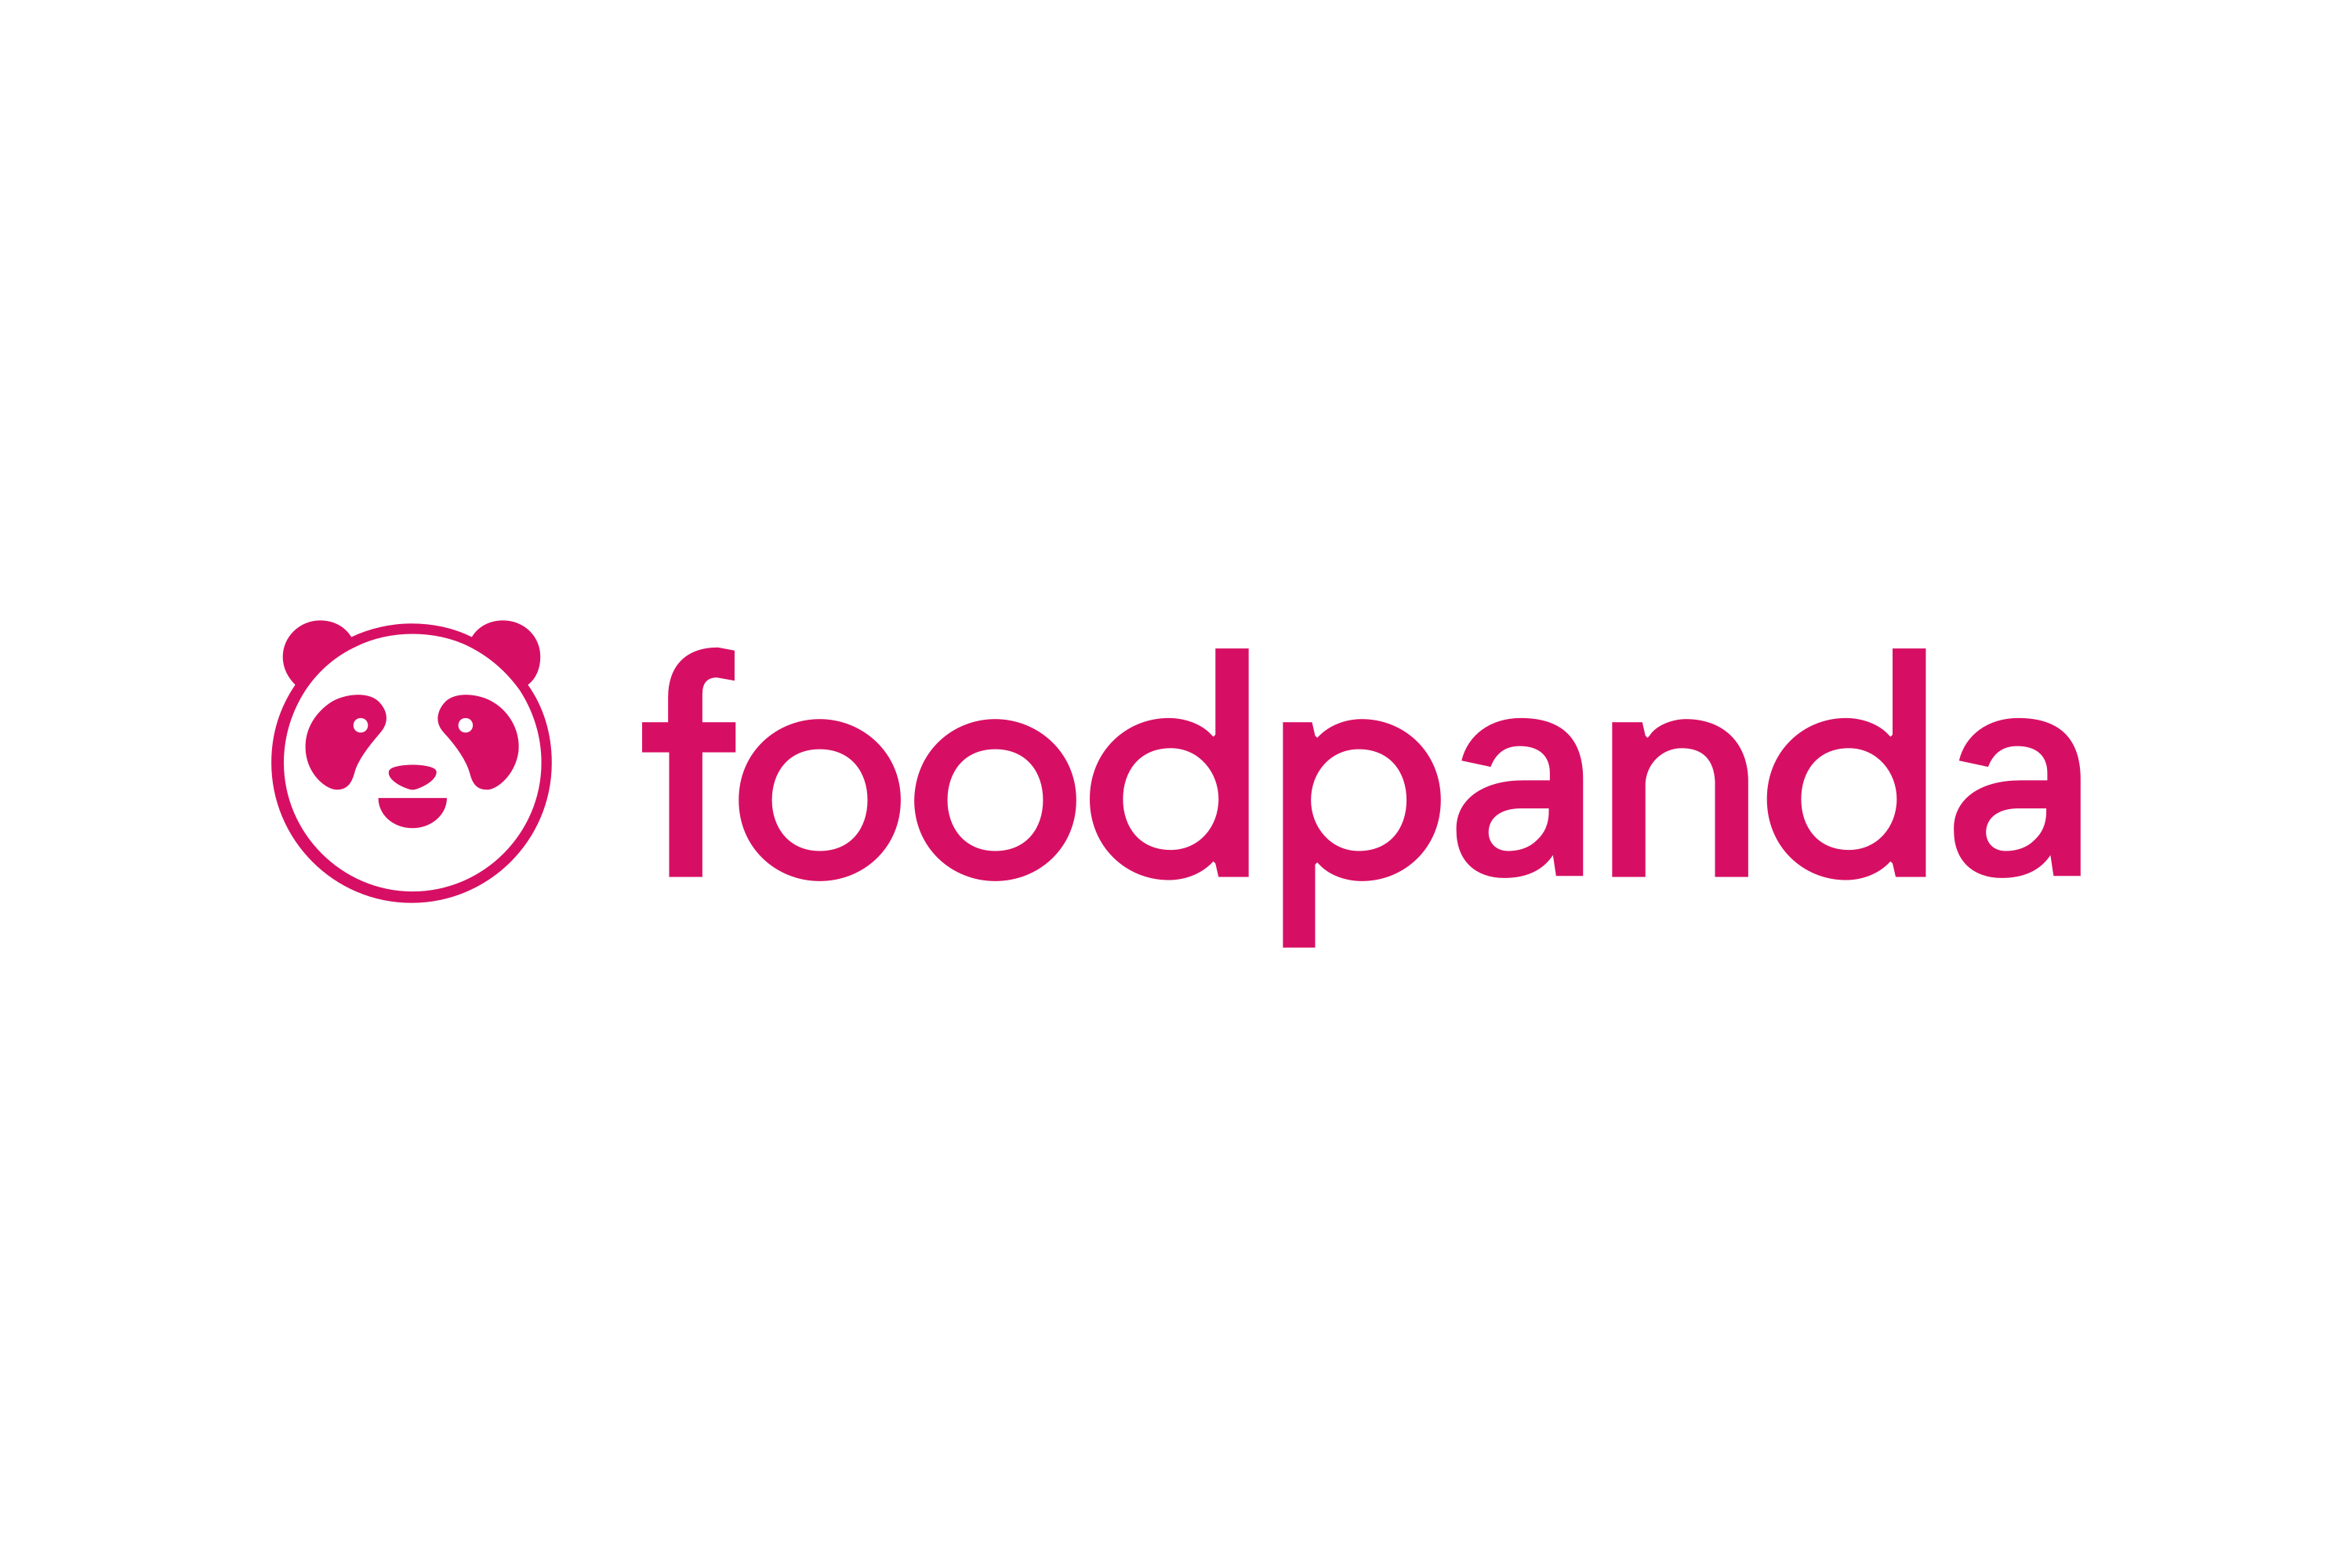 foodpanda Logo - Download Foodpanda Logo in SVG Vector or PNG File Format - Logo.wine